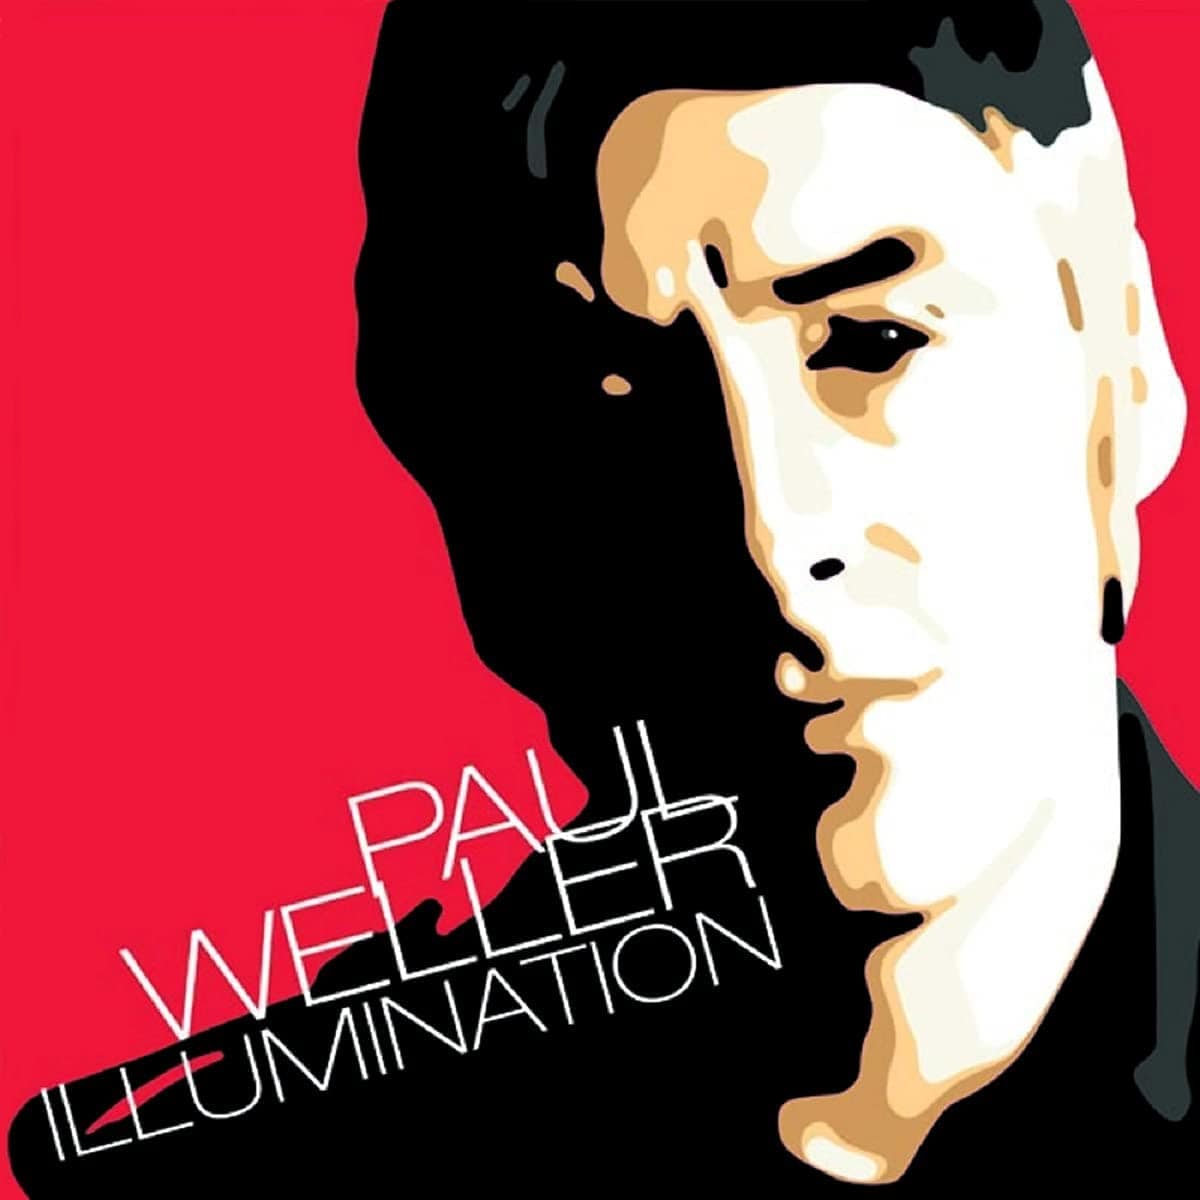 ILLUMINATION - PAUL WELLER [VINYL]